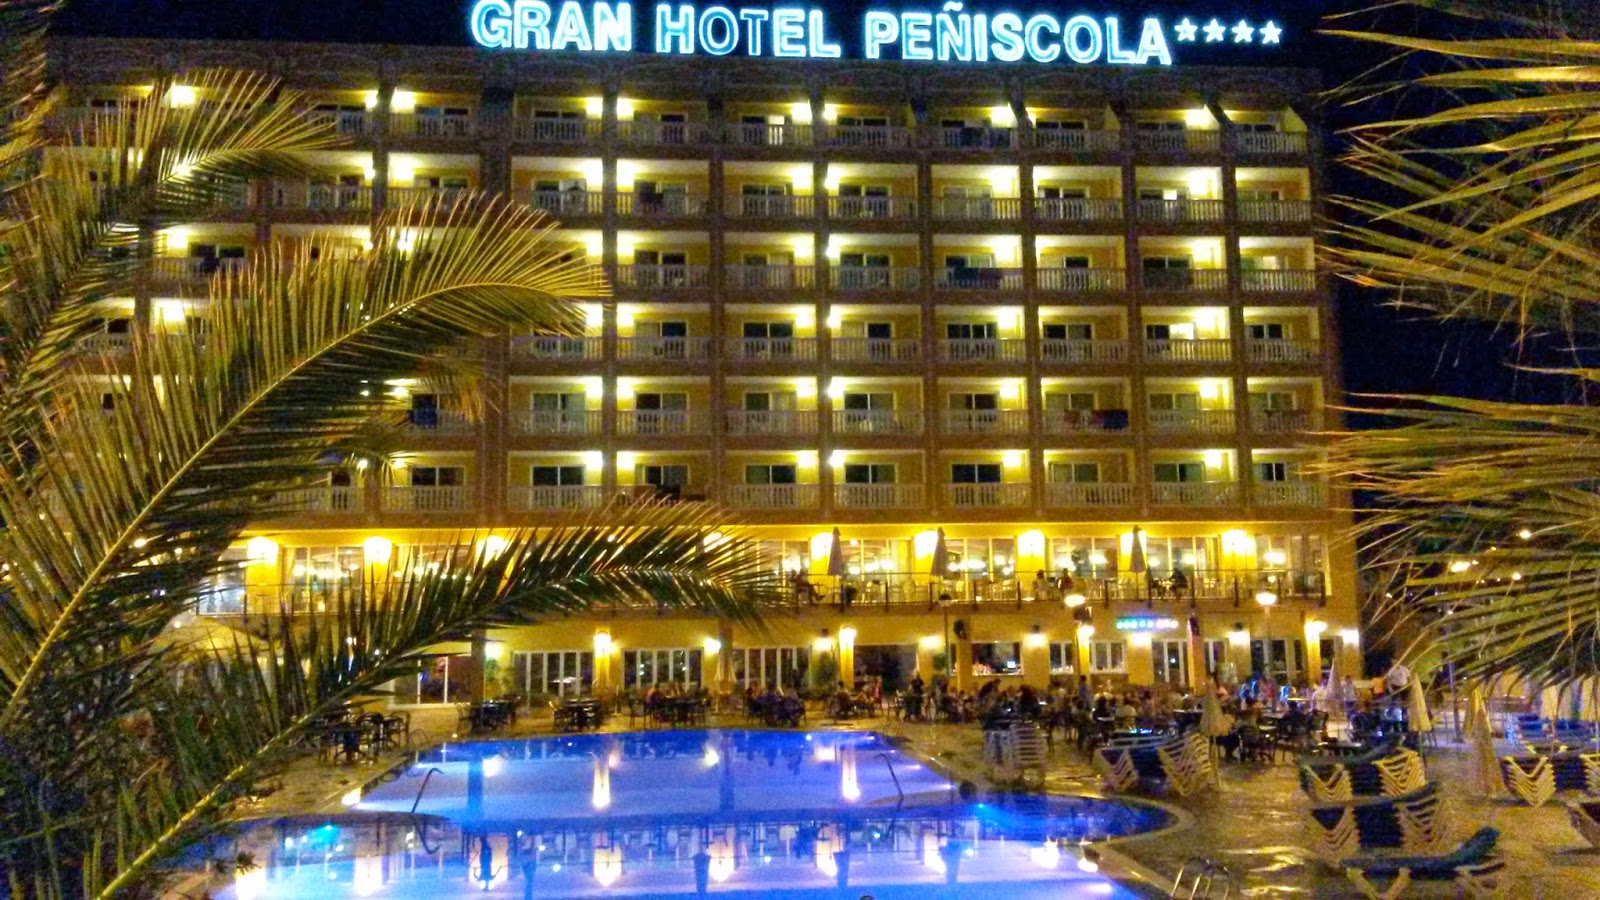 Vista nocturna de la entrada del hotel y su piscina